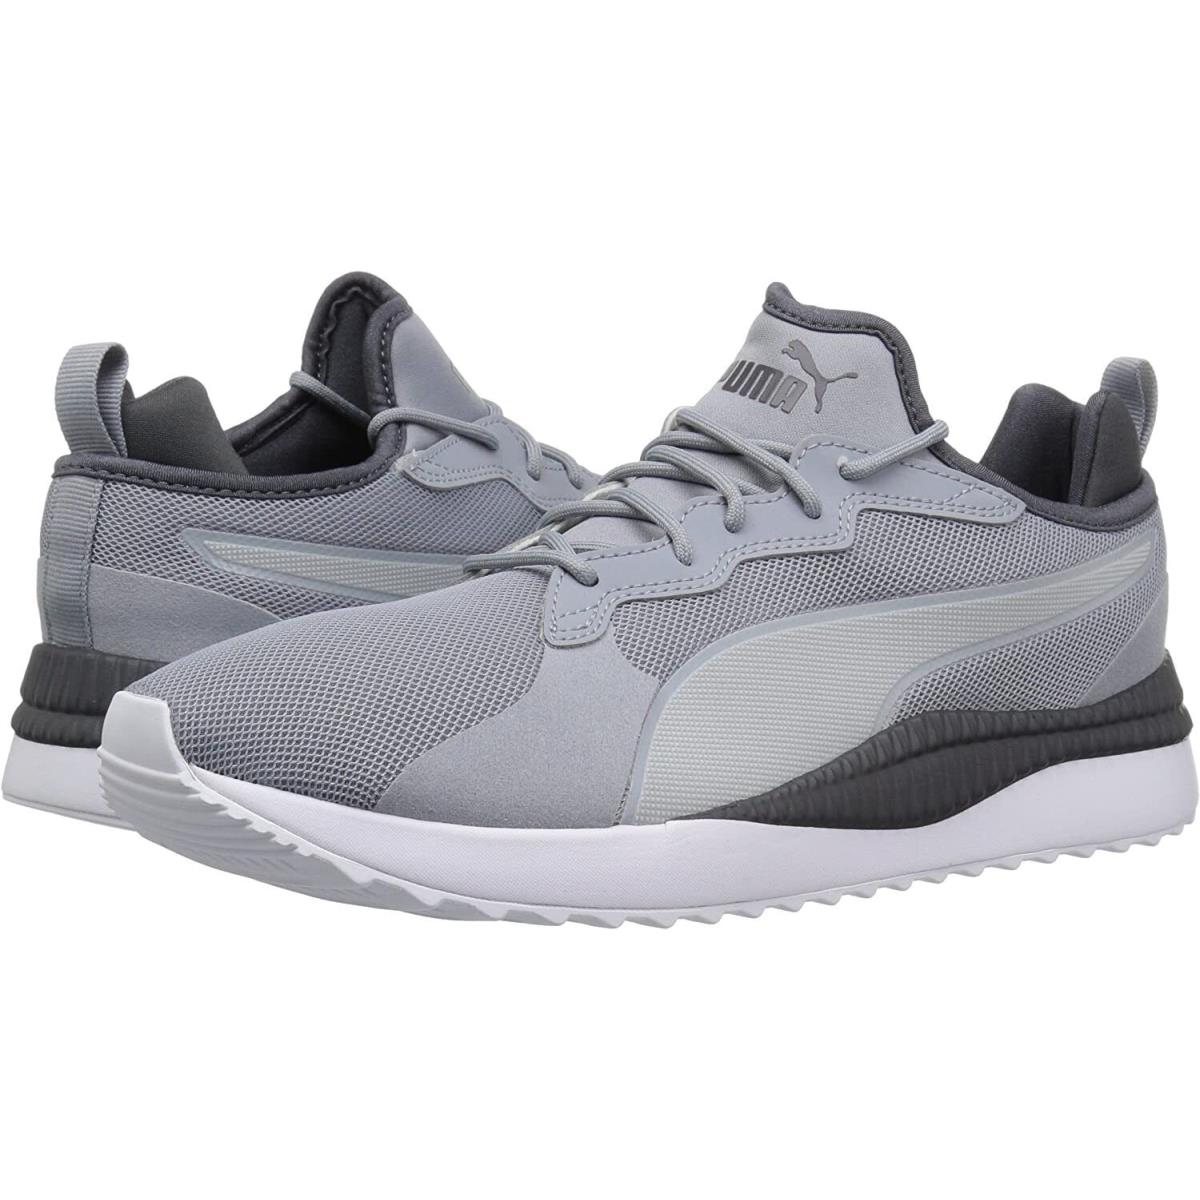 Puma shoes Pacer next - Grey/Asphalt 1